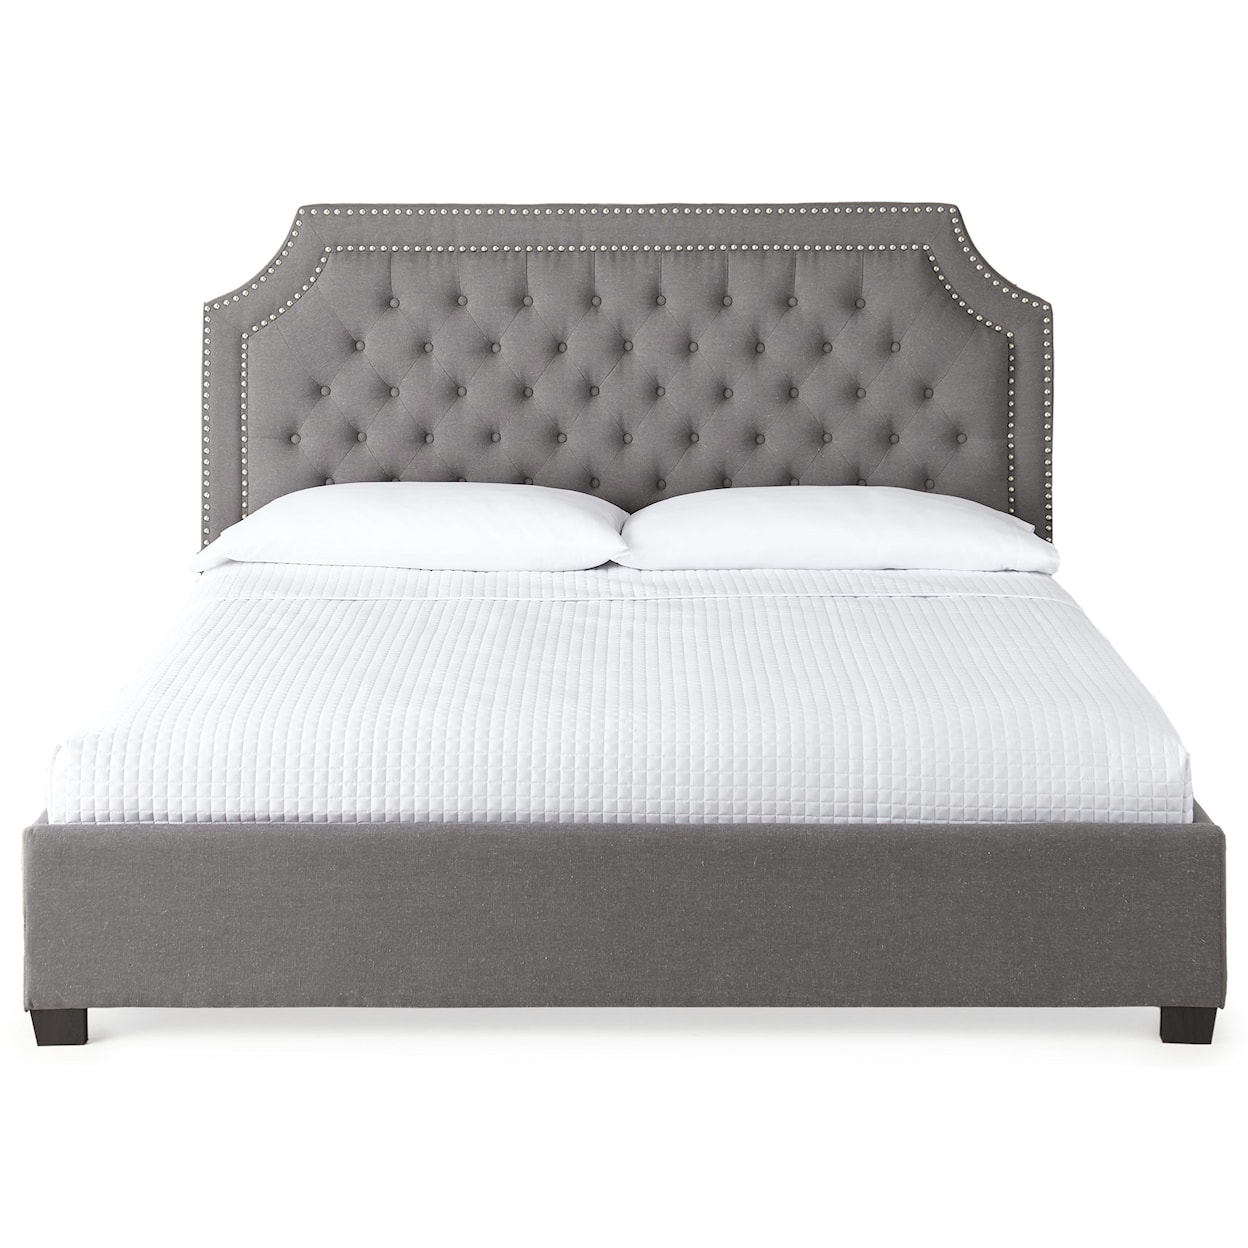 Belfort Essentials Wilshire King Upholstered Bed